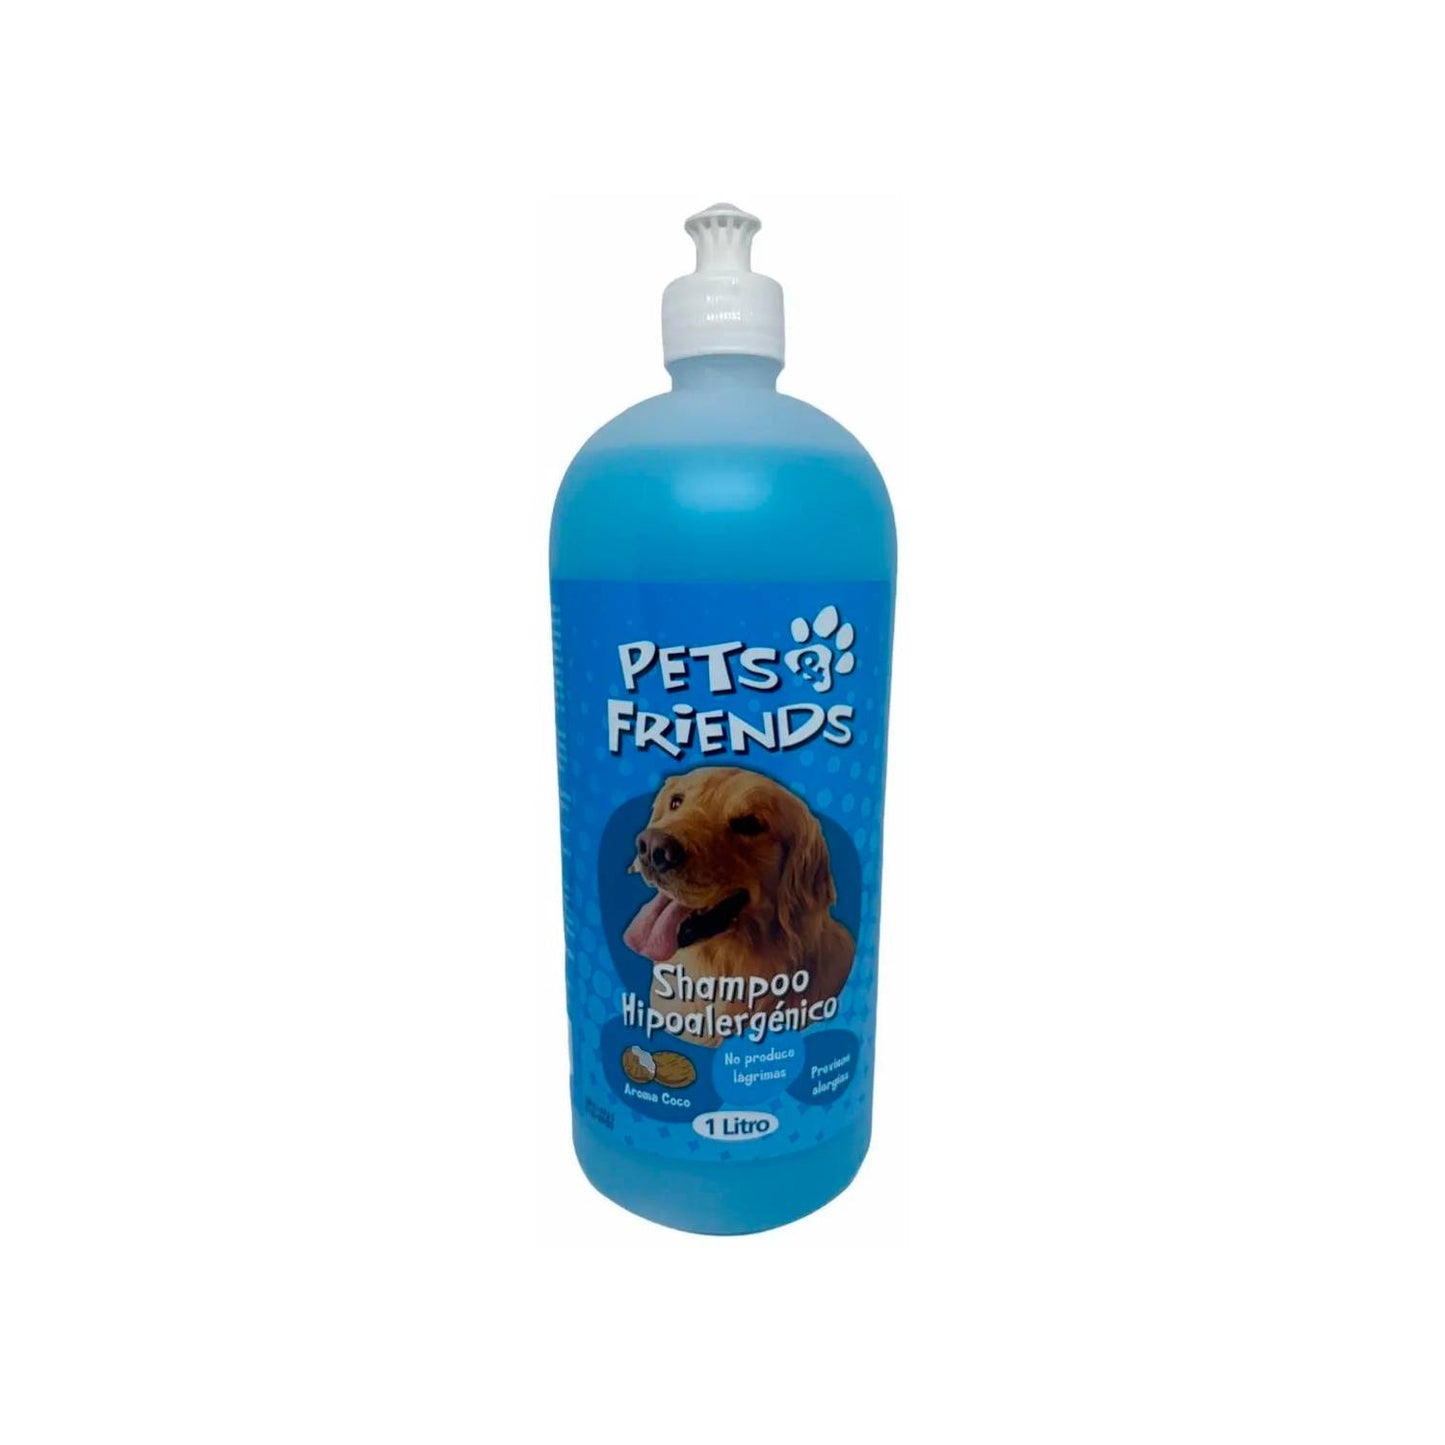 Pets & friends shampoo hipoalergénico